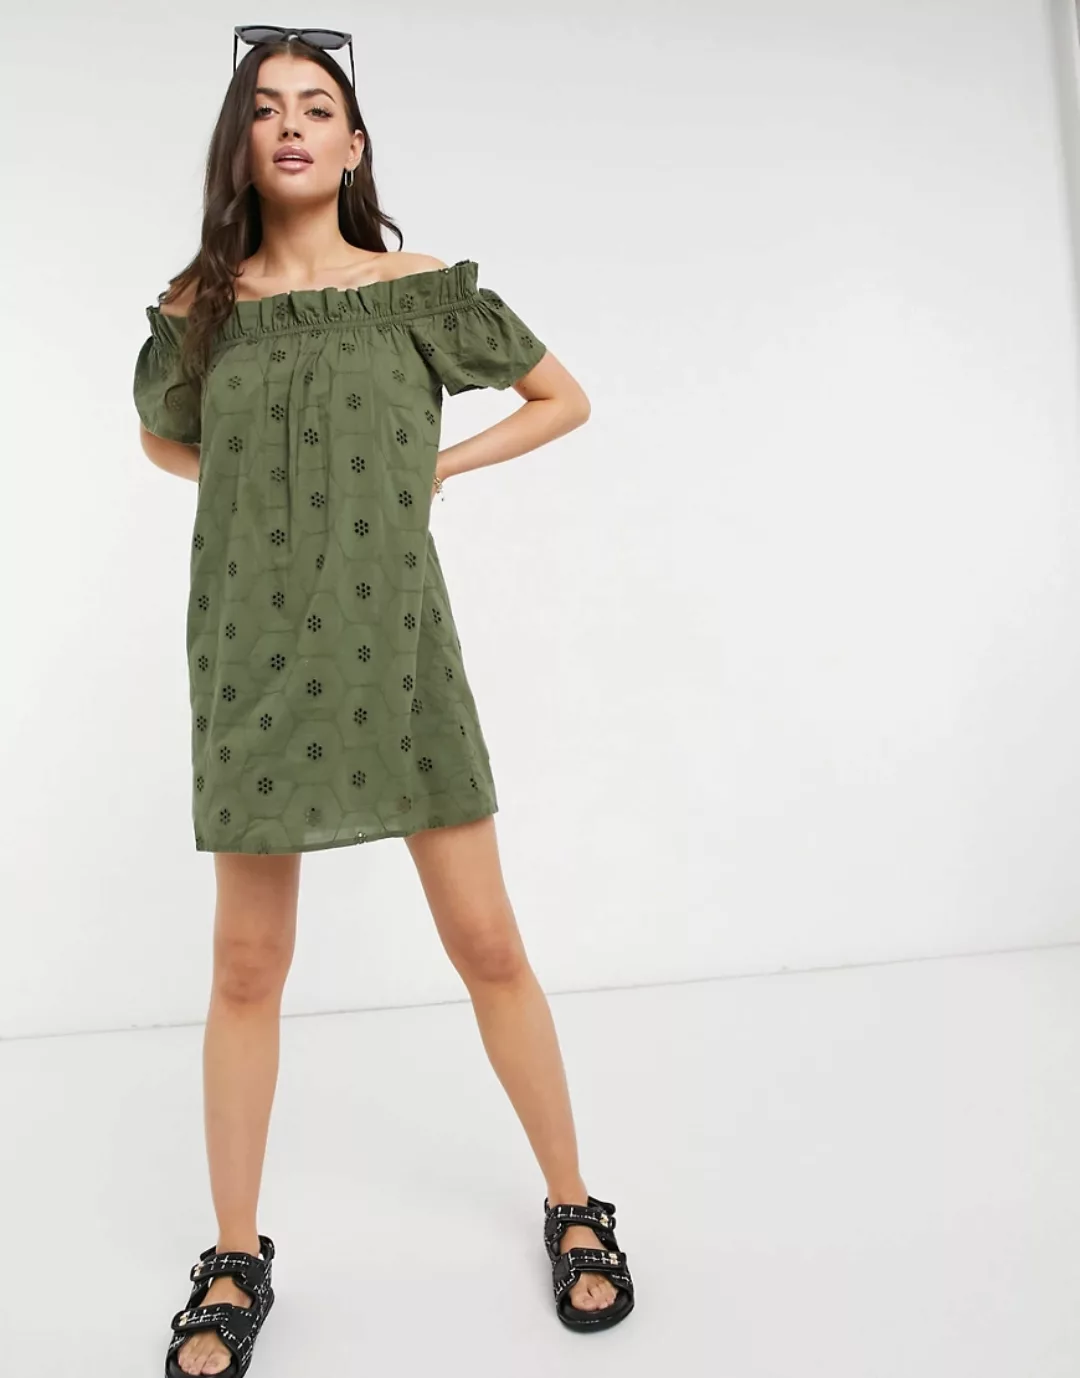 Accessorize – Schulterfreies Kleid in Khaki-Grün günstig online kaufen